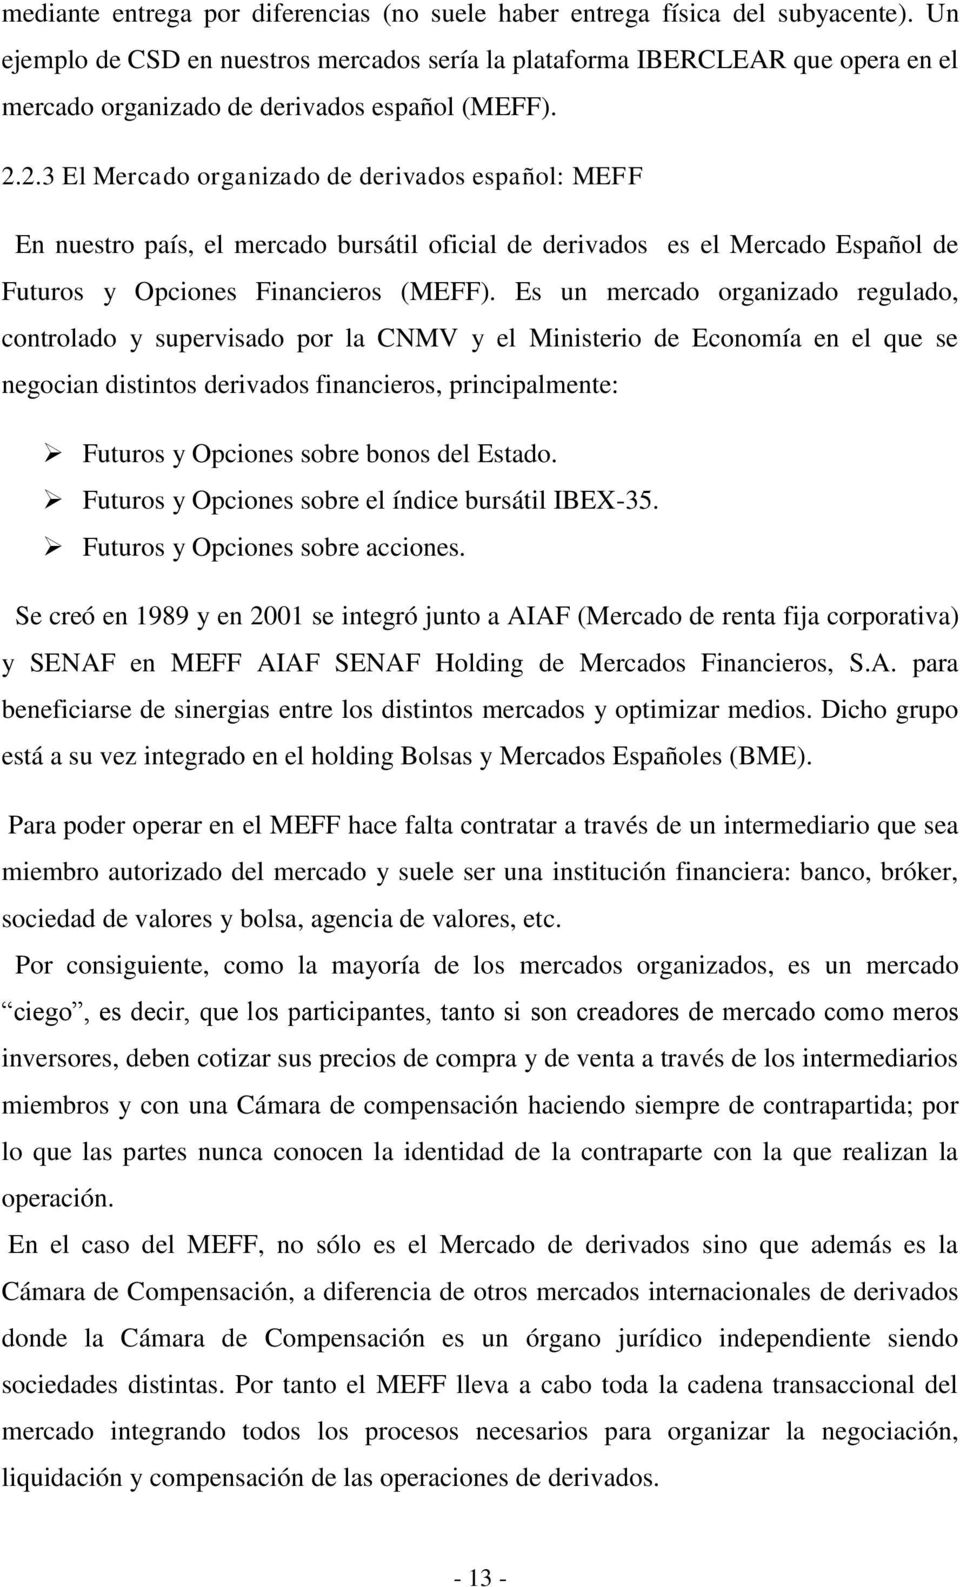 2.3 El Mercado organizado de derivados español: MEFF En nuestro país, el mercado bursátil oficial de derivados es el Mercado Español de Futuros y Opciones Financieros (MEFF).